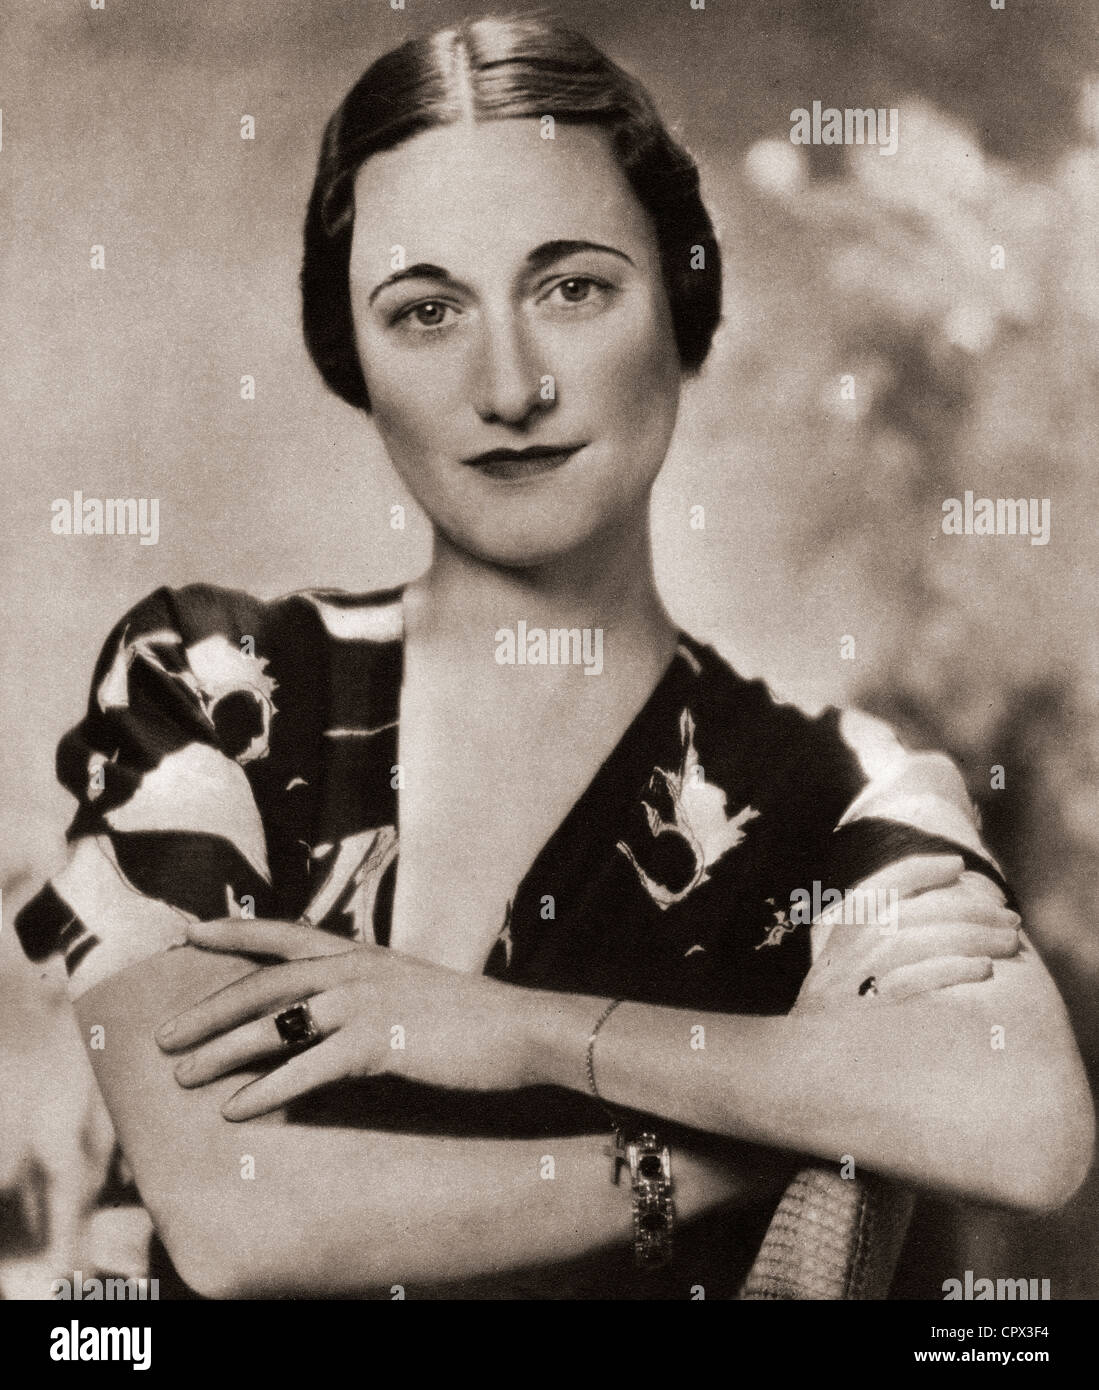 Wallis Simpson, in seguito duchessa di Windsor, nato Bessie Wallis Warfield, 1896 - 1986. American socialite Foto Stock